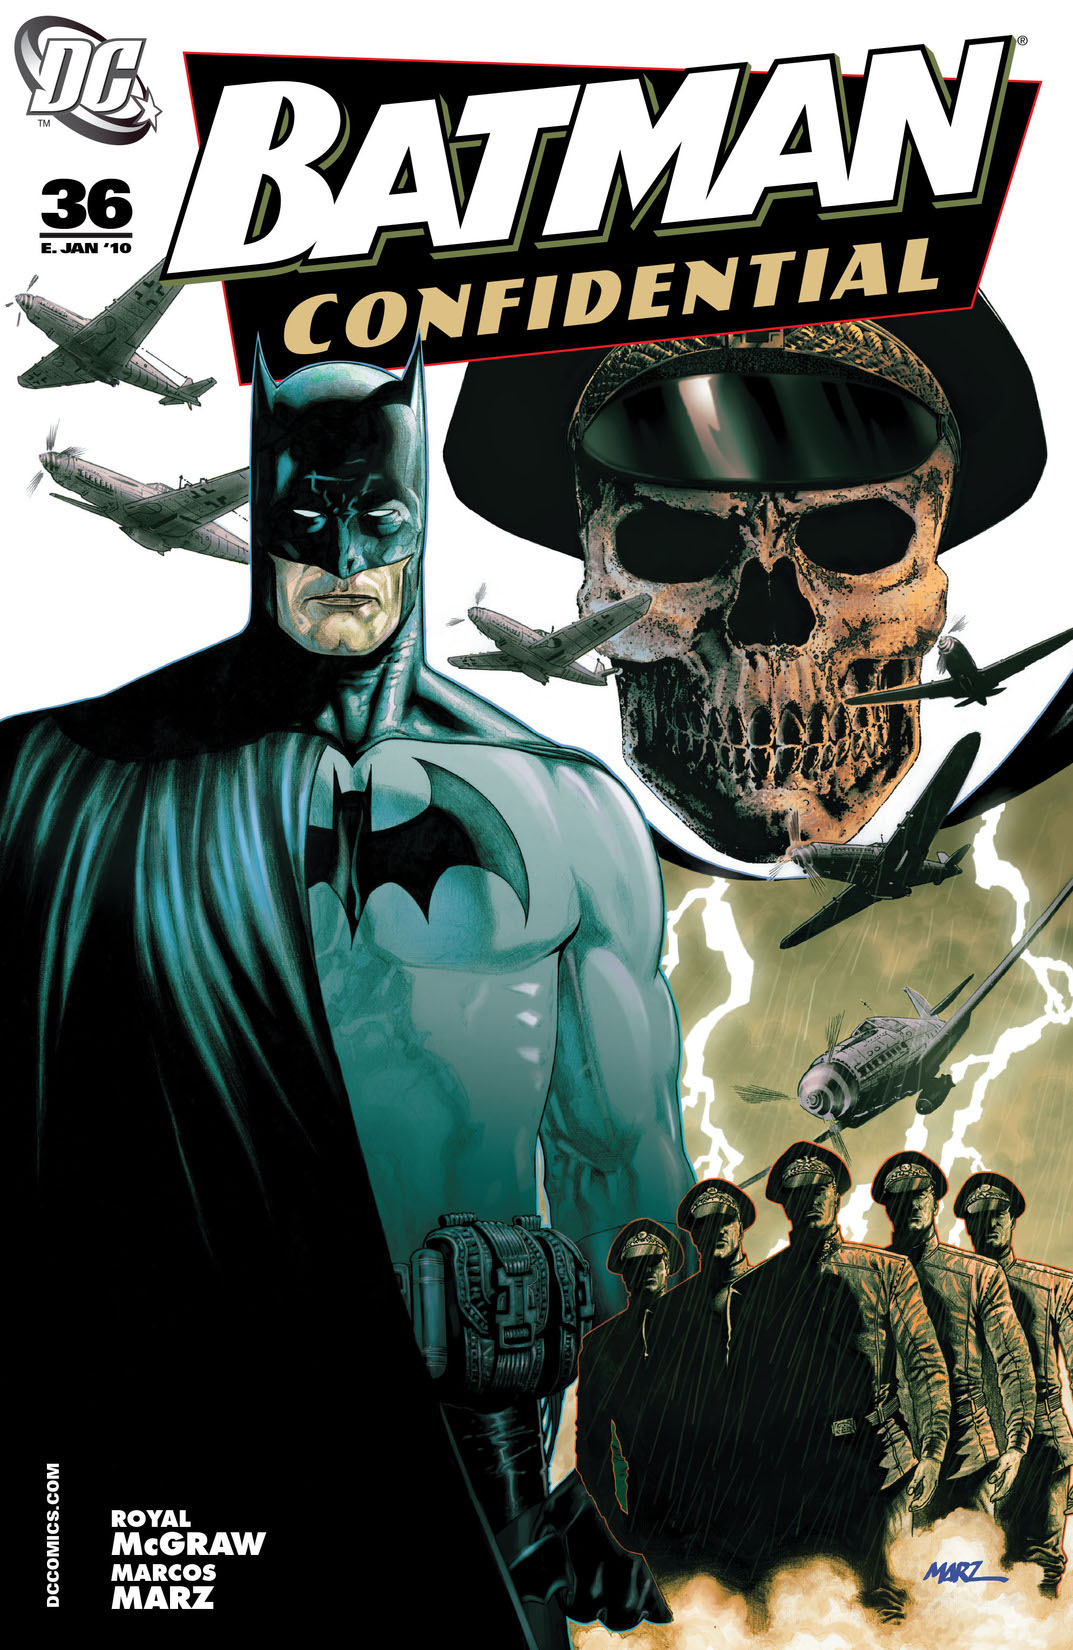 Batman Confidential #36 preview images